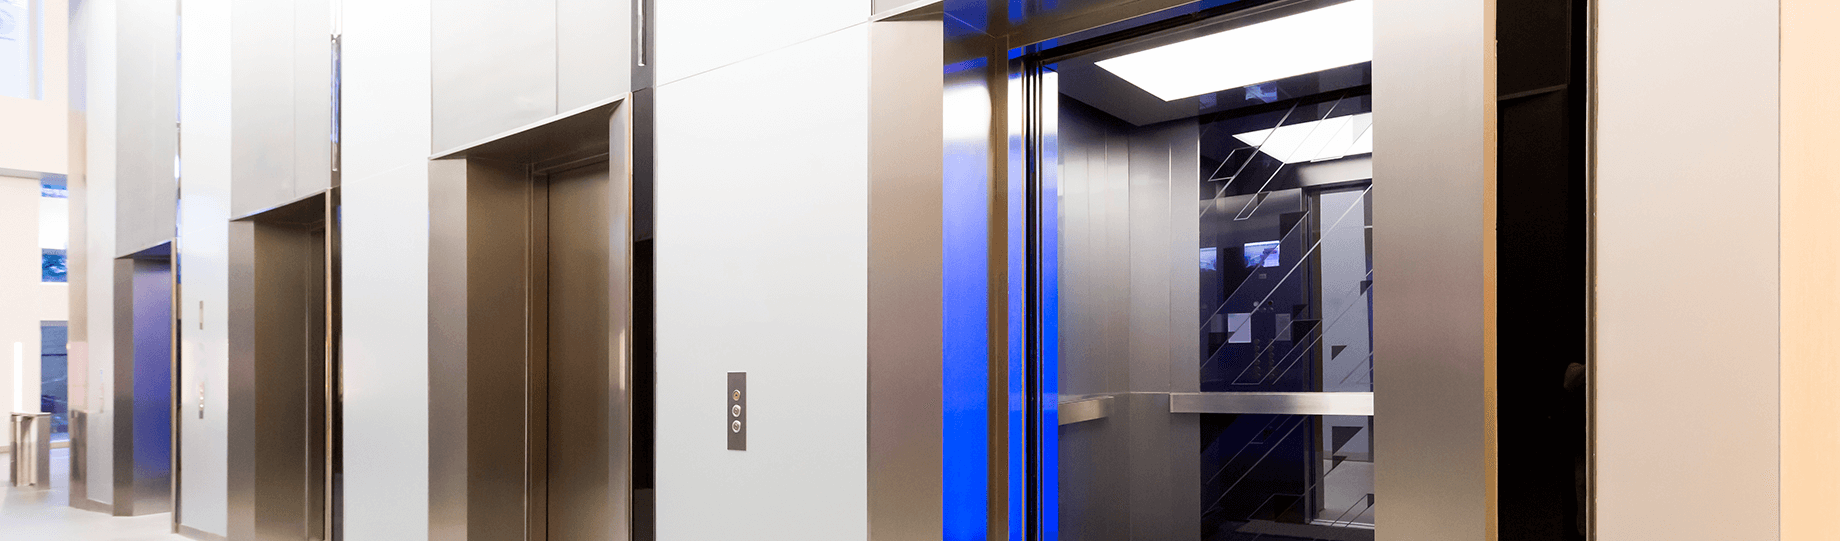 acidentes mais comuns em elevadores